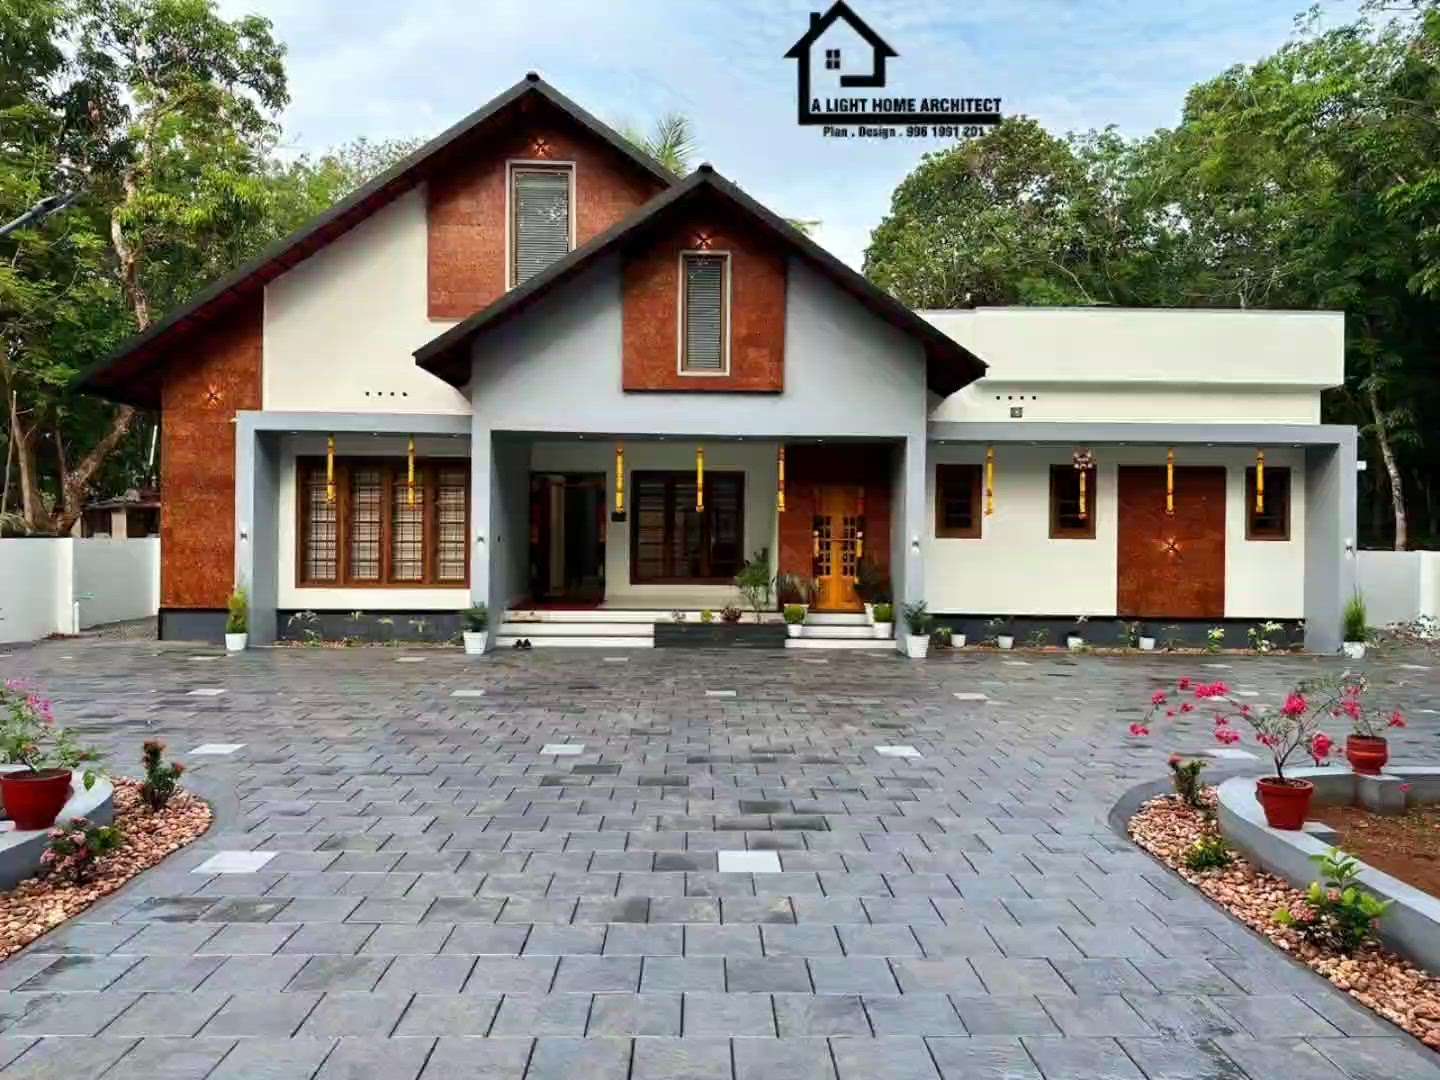 3 ബെഡ്‌റൂം കൂടിയ ഒരു അടിപൊളി 🏡😍 വീട് കണ്ടുനോക്കു 👌😍
plan and 3D design aavishiyam undagilu message cheyiyu 

 #veedu #HouseDesigns #3BHK  #TraditionalHouse #naalukettu #tropicalhouse #SouthFacingPlan #1600sqfthouse #LandscapeIdeas #alighthomearchitect #morden #ElevationHome #elegantdesign #KeralaStyleHouse #keralastyle #keralaplanners